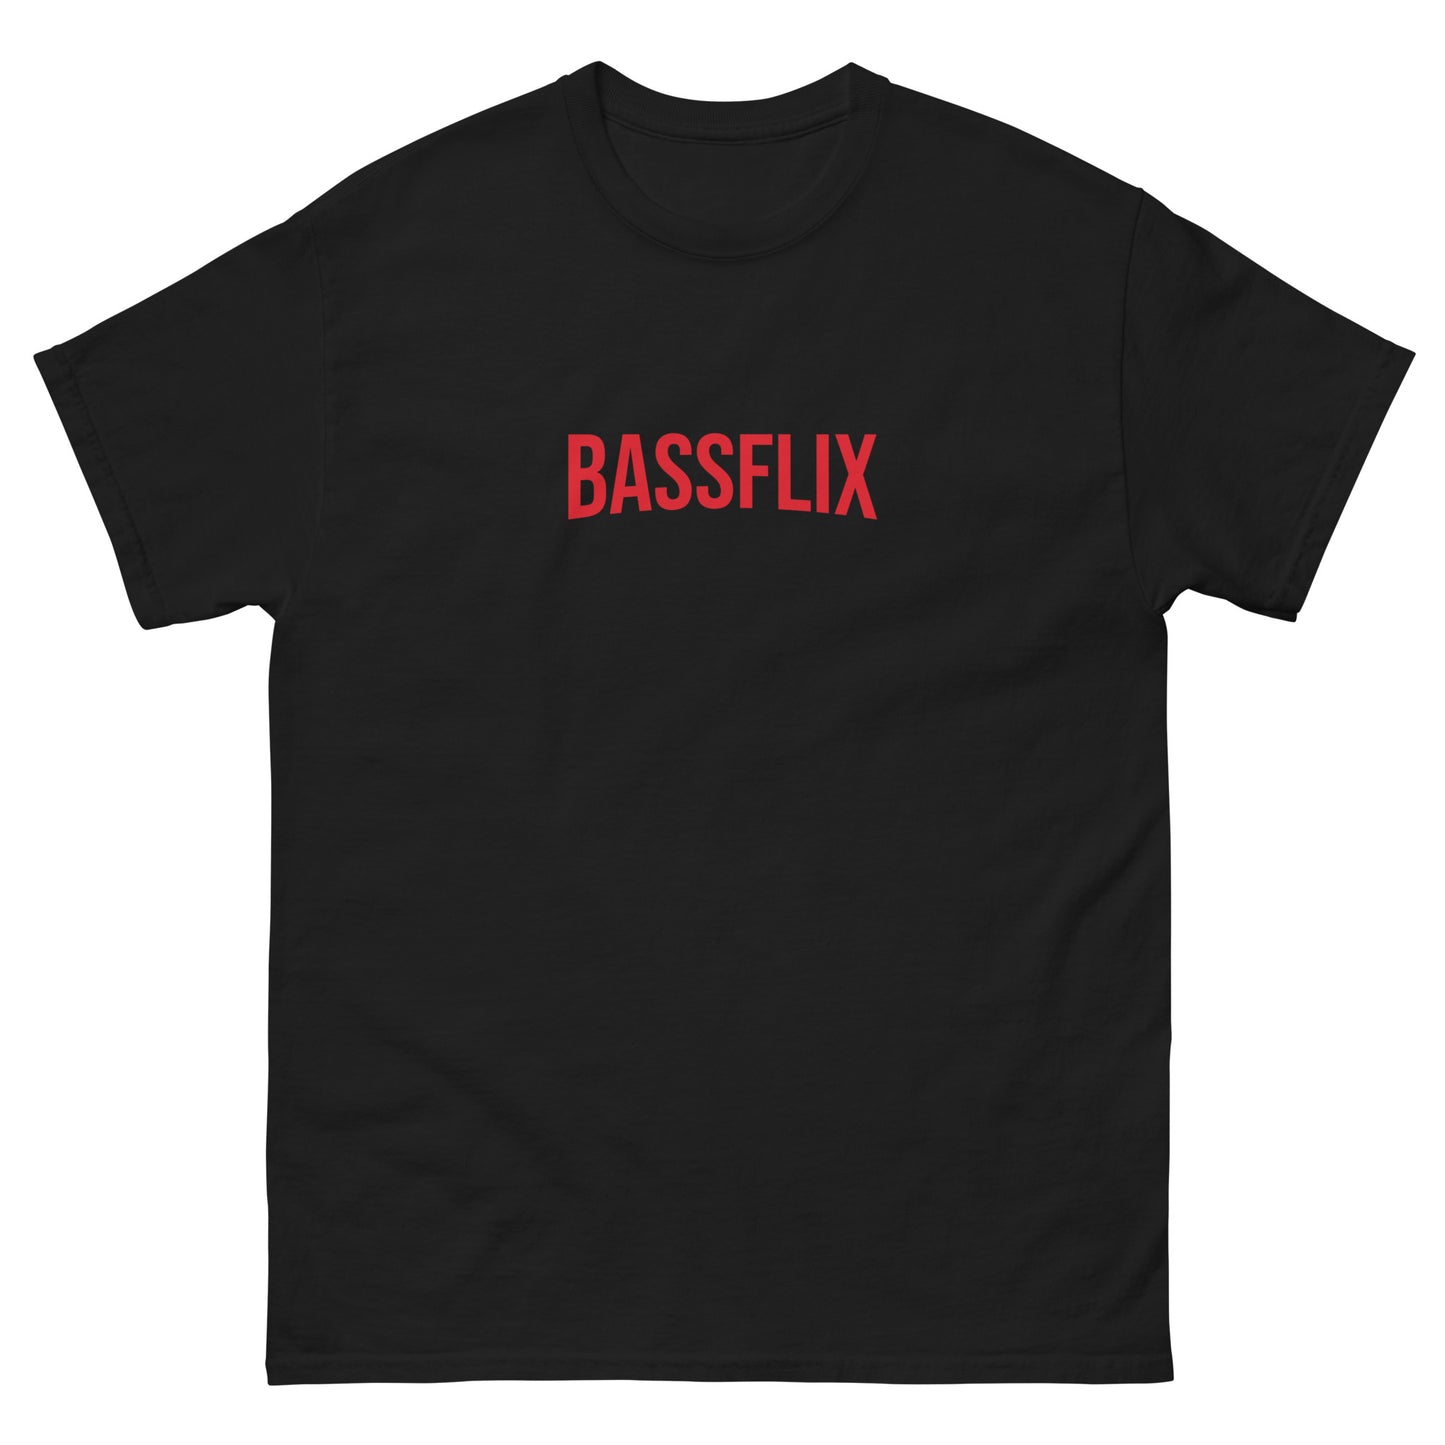 Bassflix T-Shirt